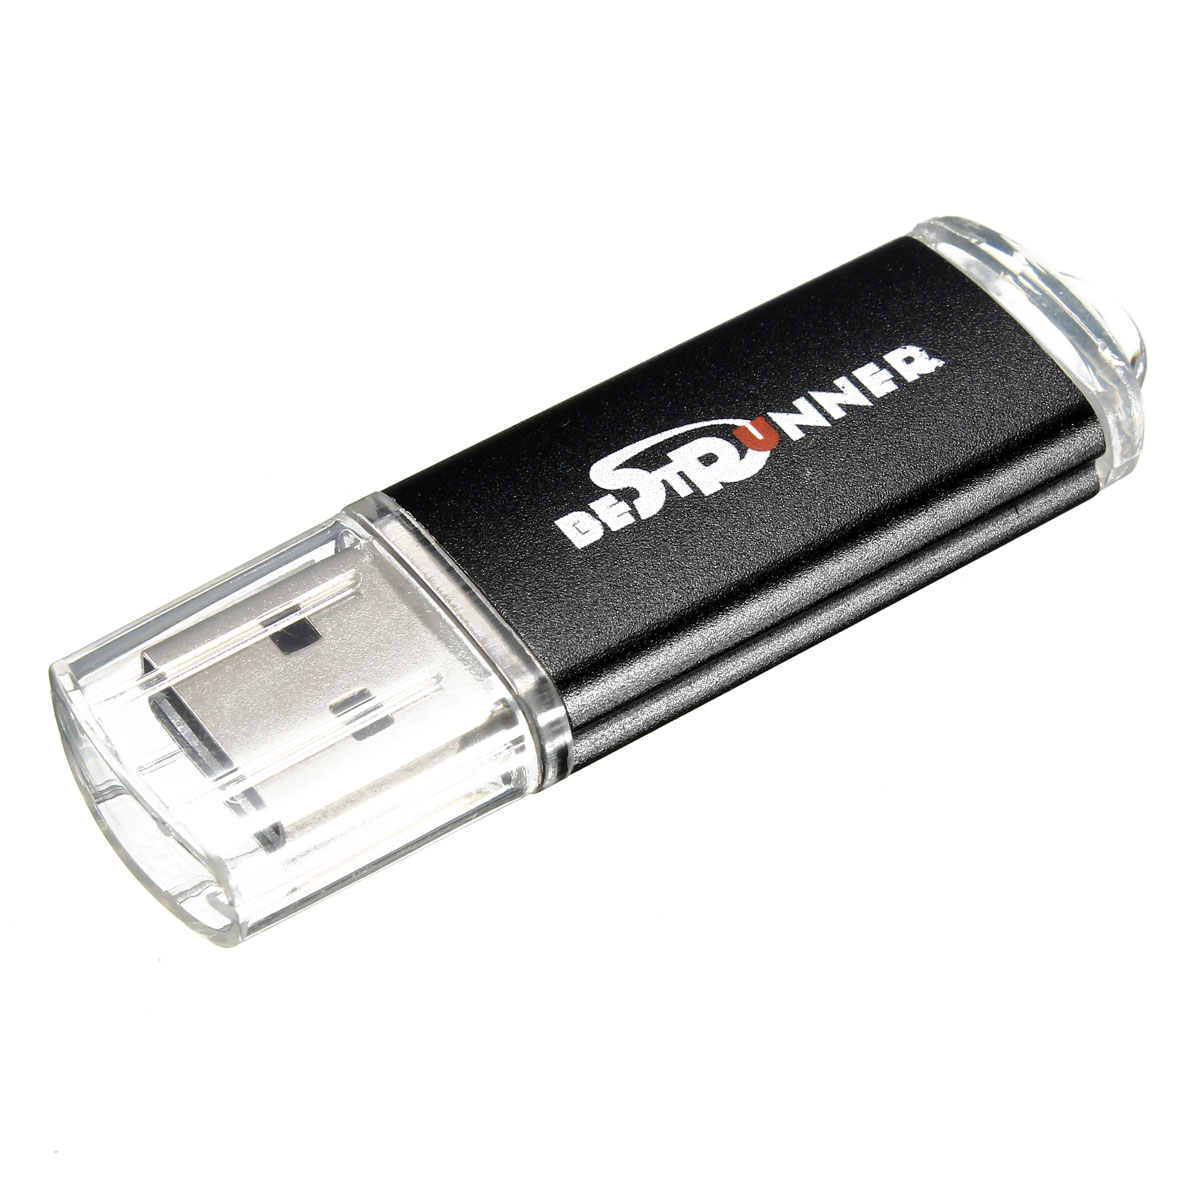 Bestrunner 32GB USB 2.0 Flash Drive Candy Color Memory U Disk 